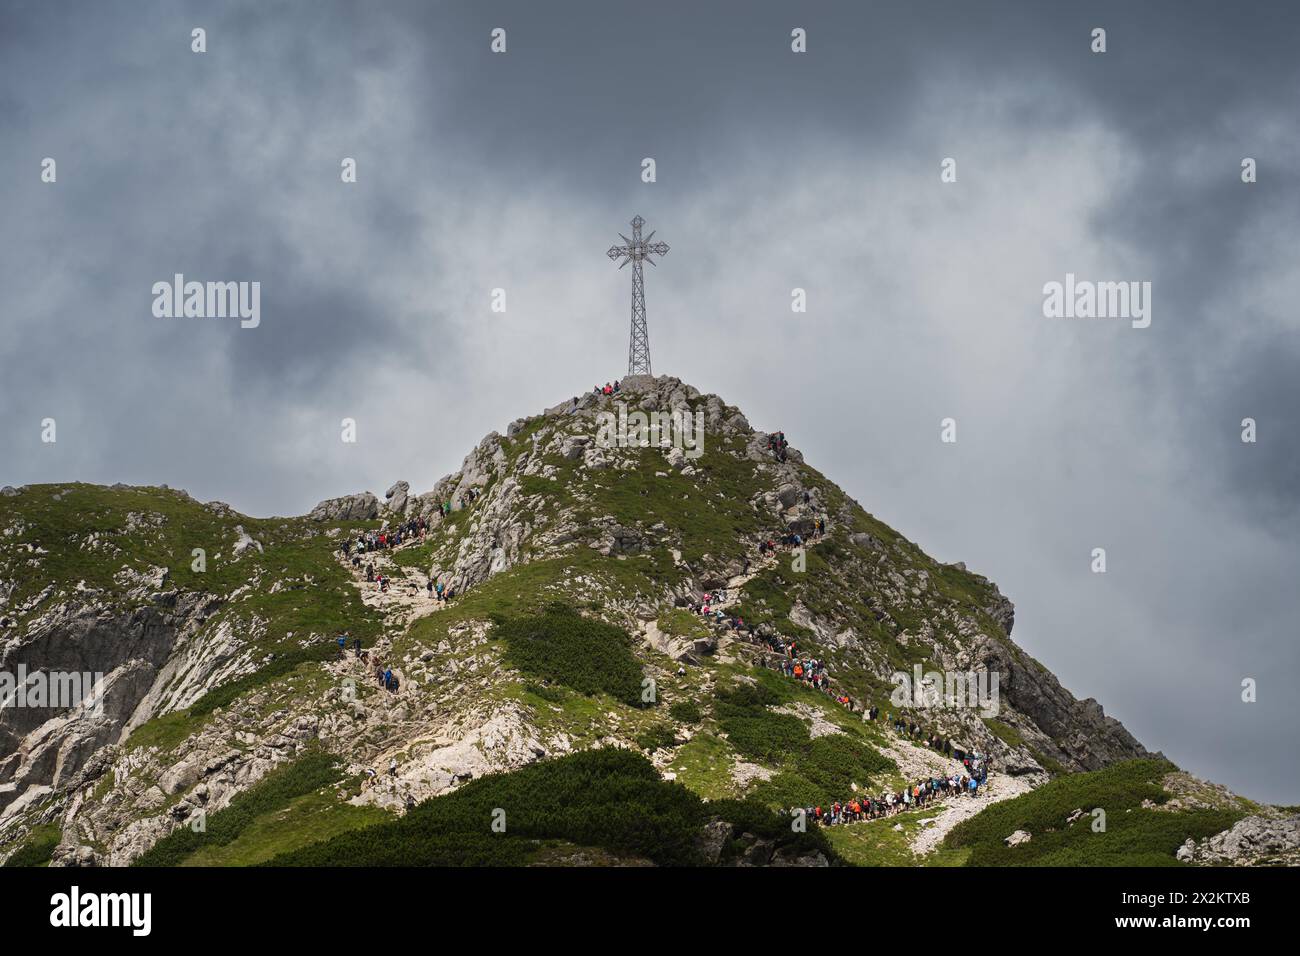 Pologne, Zakopane 25 juillet 2023. Les gens affluent vers la haute montagne avec la croix de Giewont. Le ciel est couvert de nuages. Banque D'Images